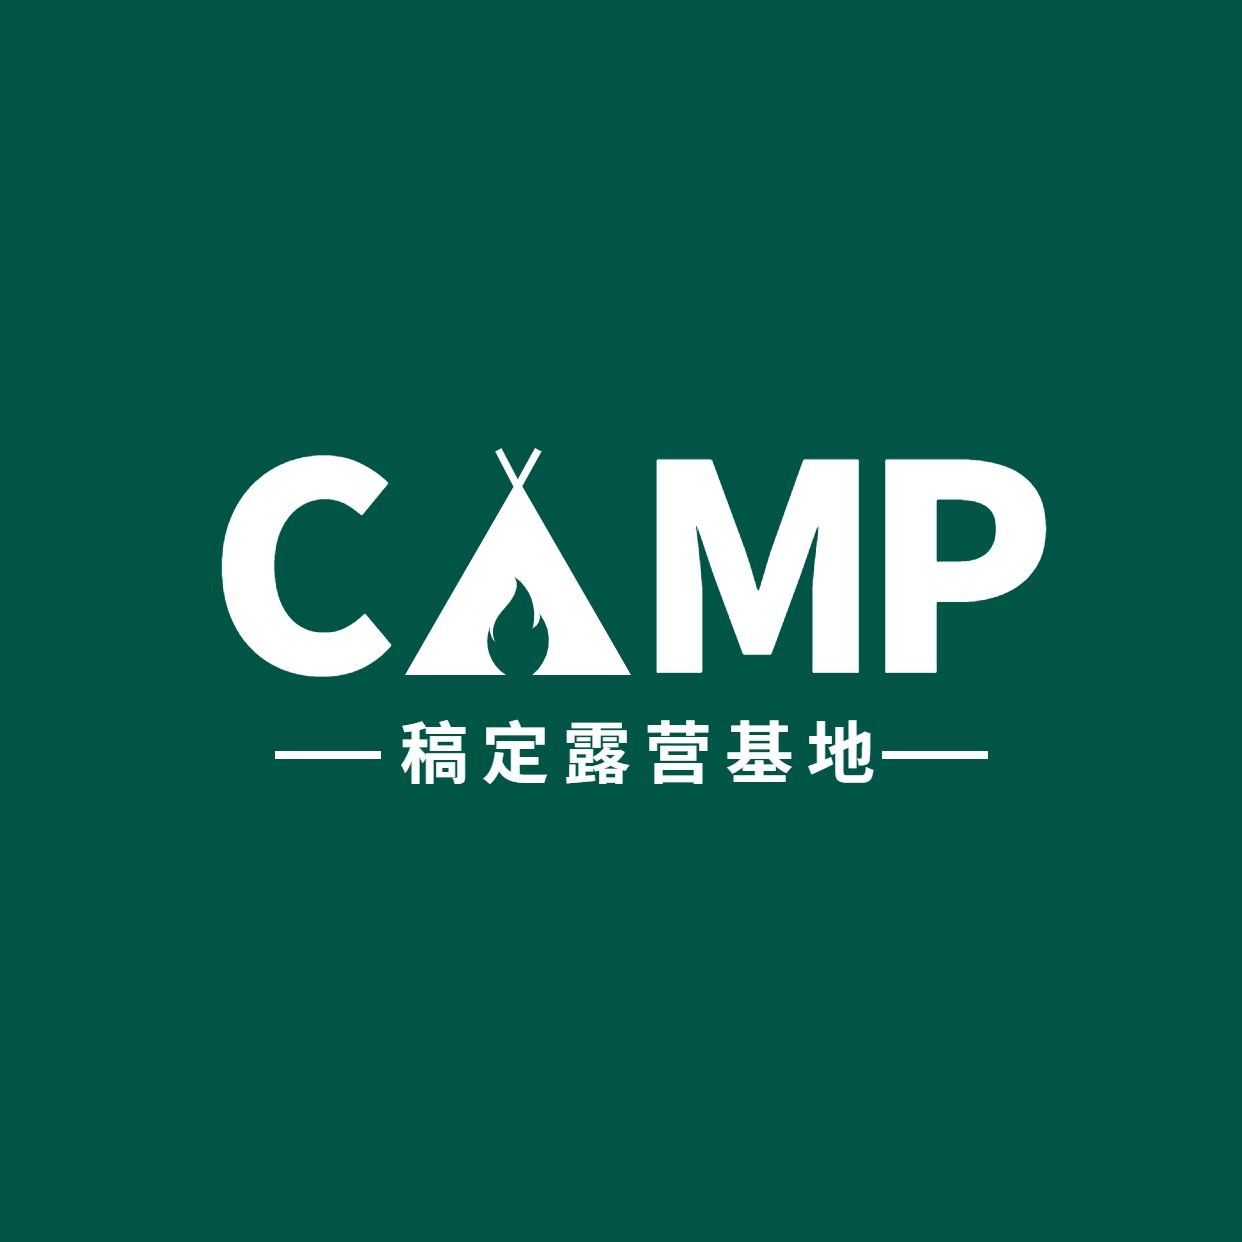 旅游露营房车logo设计预览效果